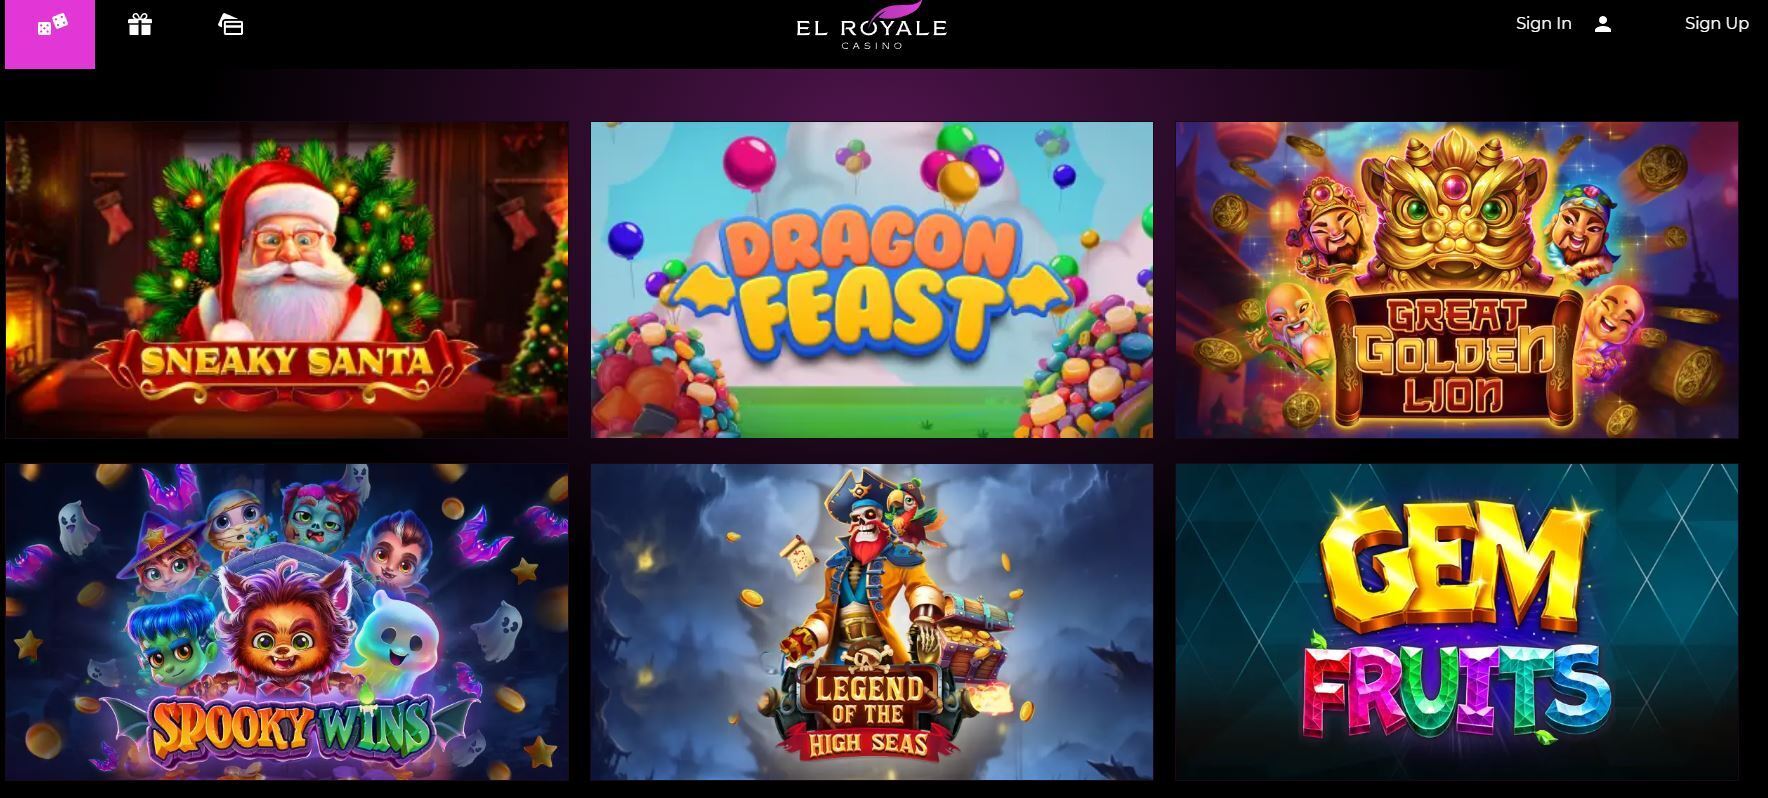 el royale casino site screenshot